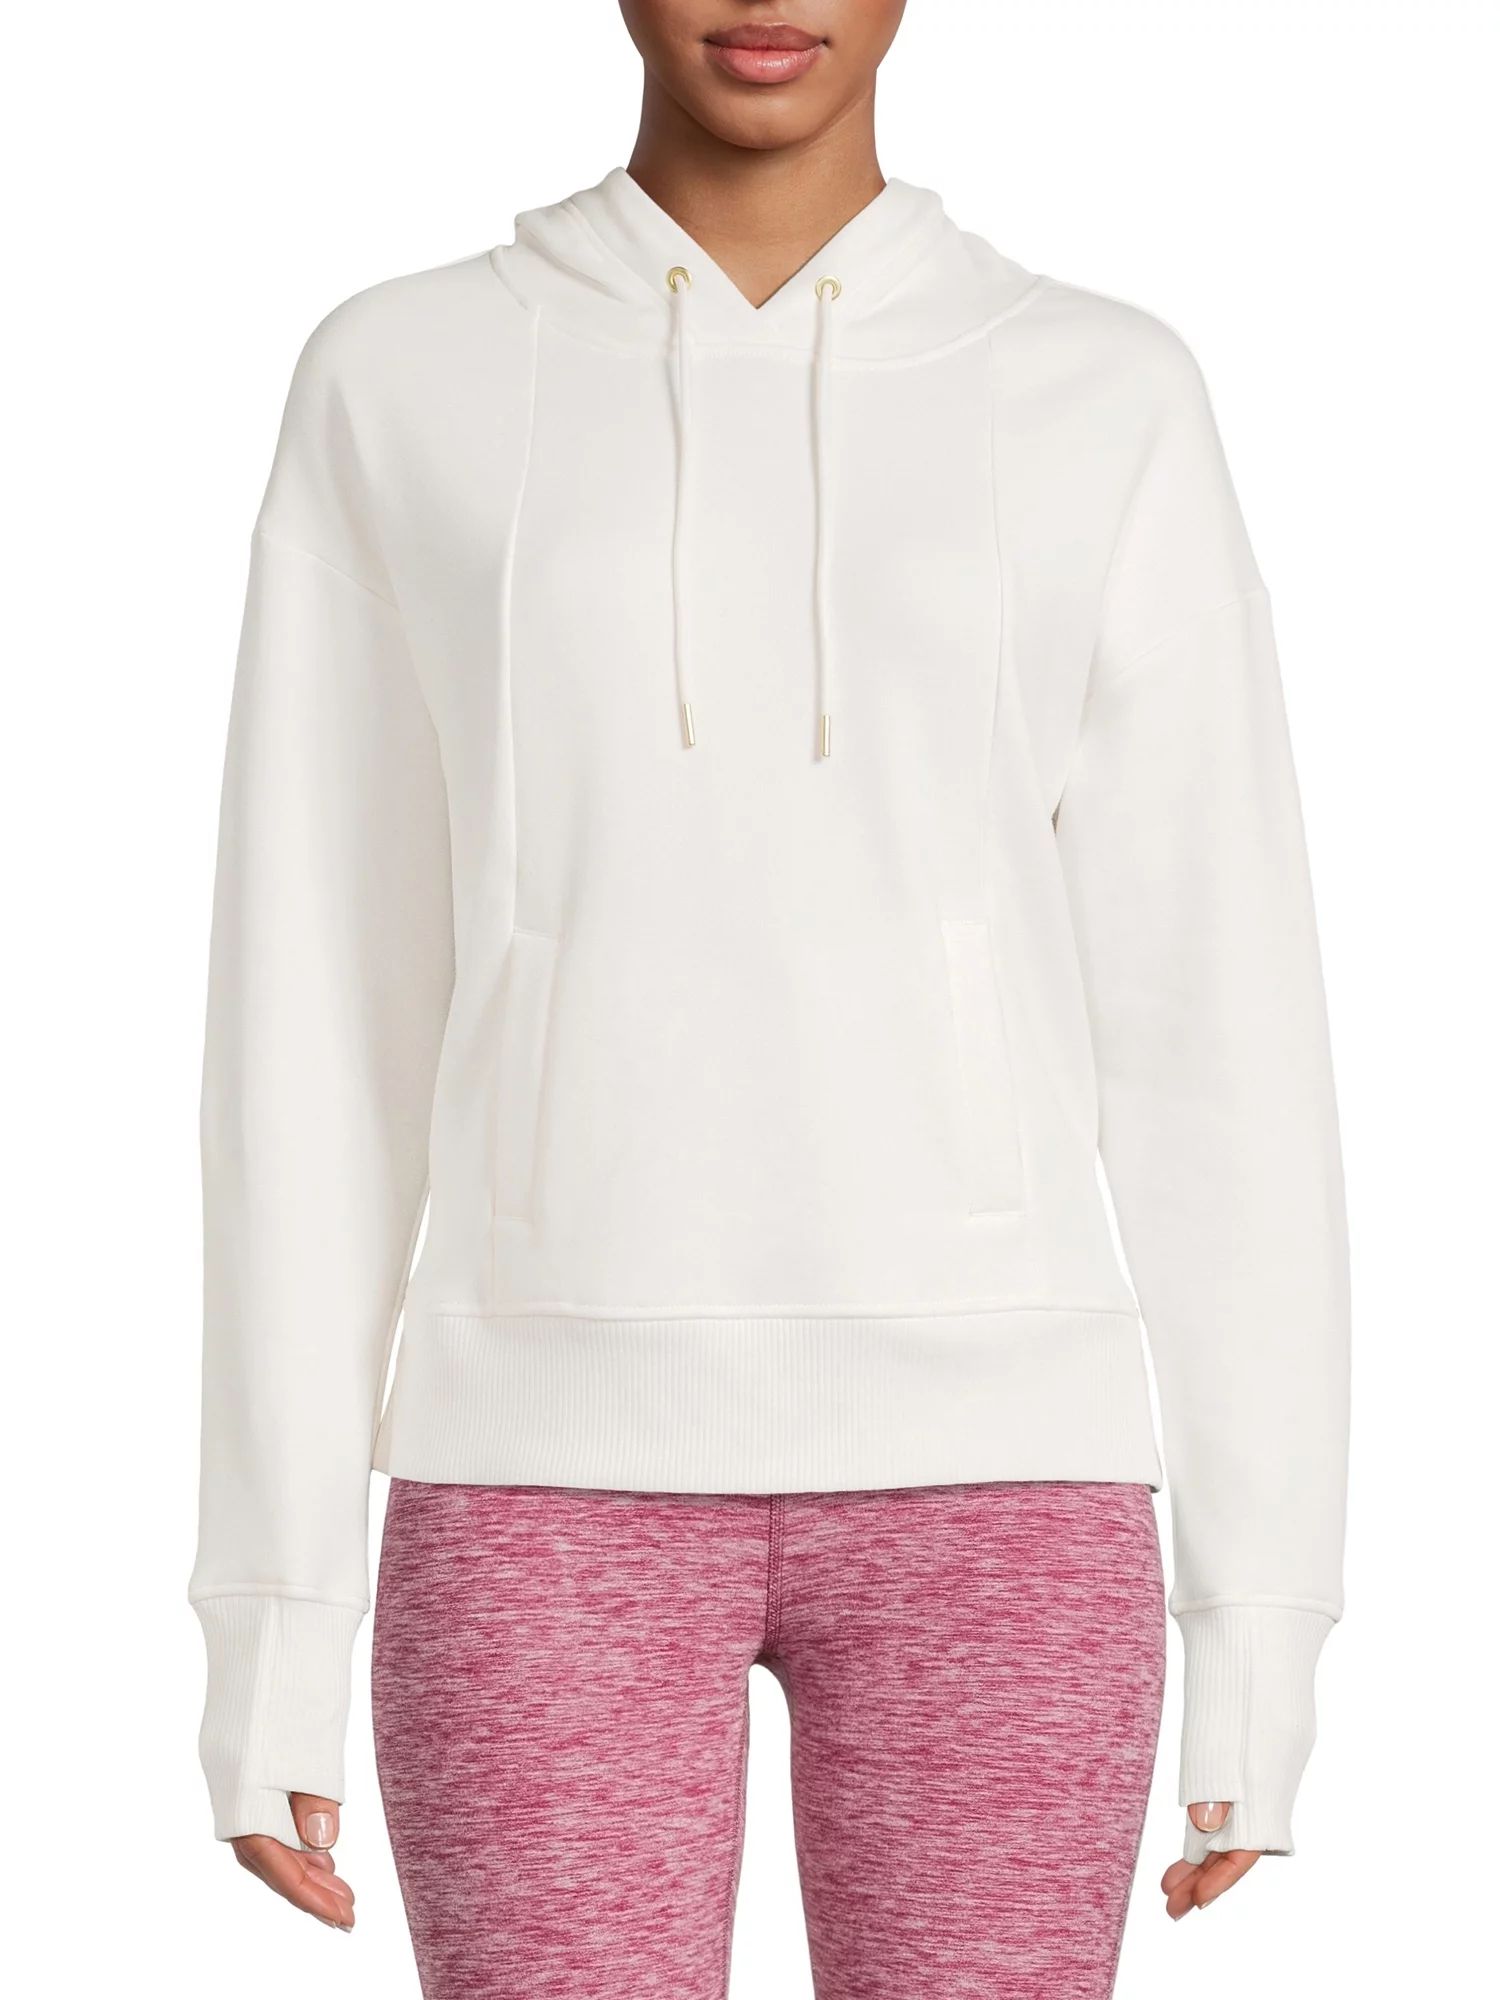 Avia Women's Active Plush Hooded Sweatshirt with Long Sleeves | Walmart (US)